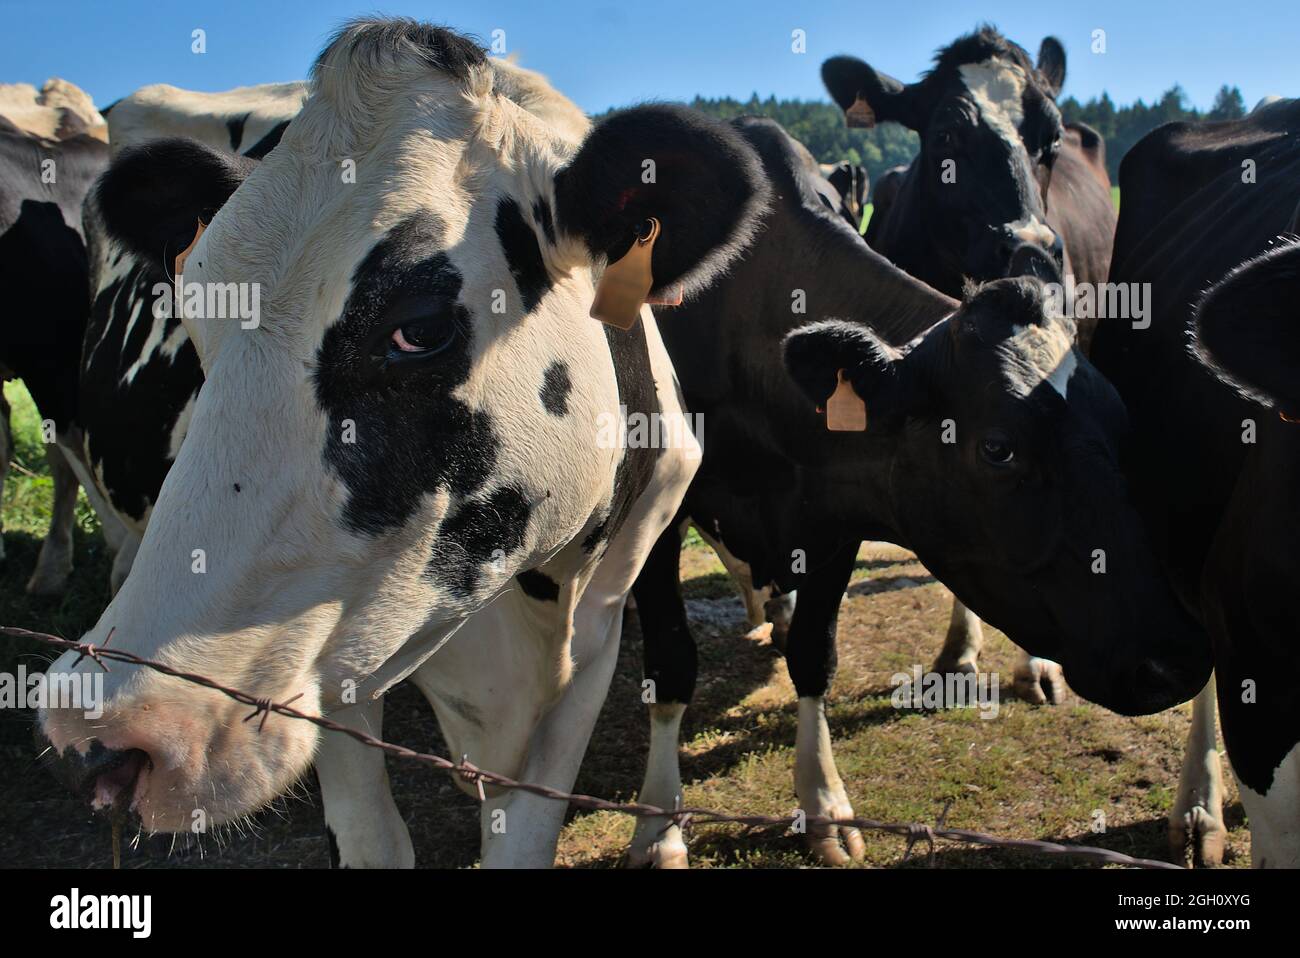 Groupe de jeunes vaches normandes noires et blanches regardant la caméra Banque D'Images